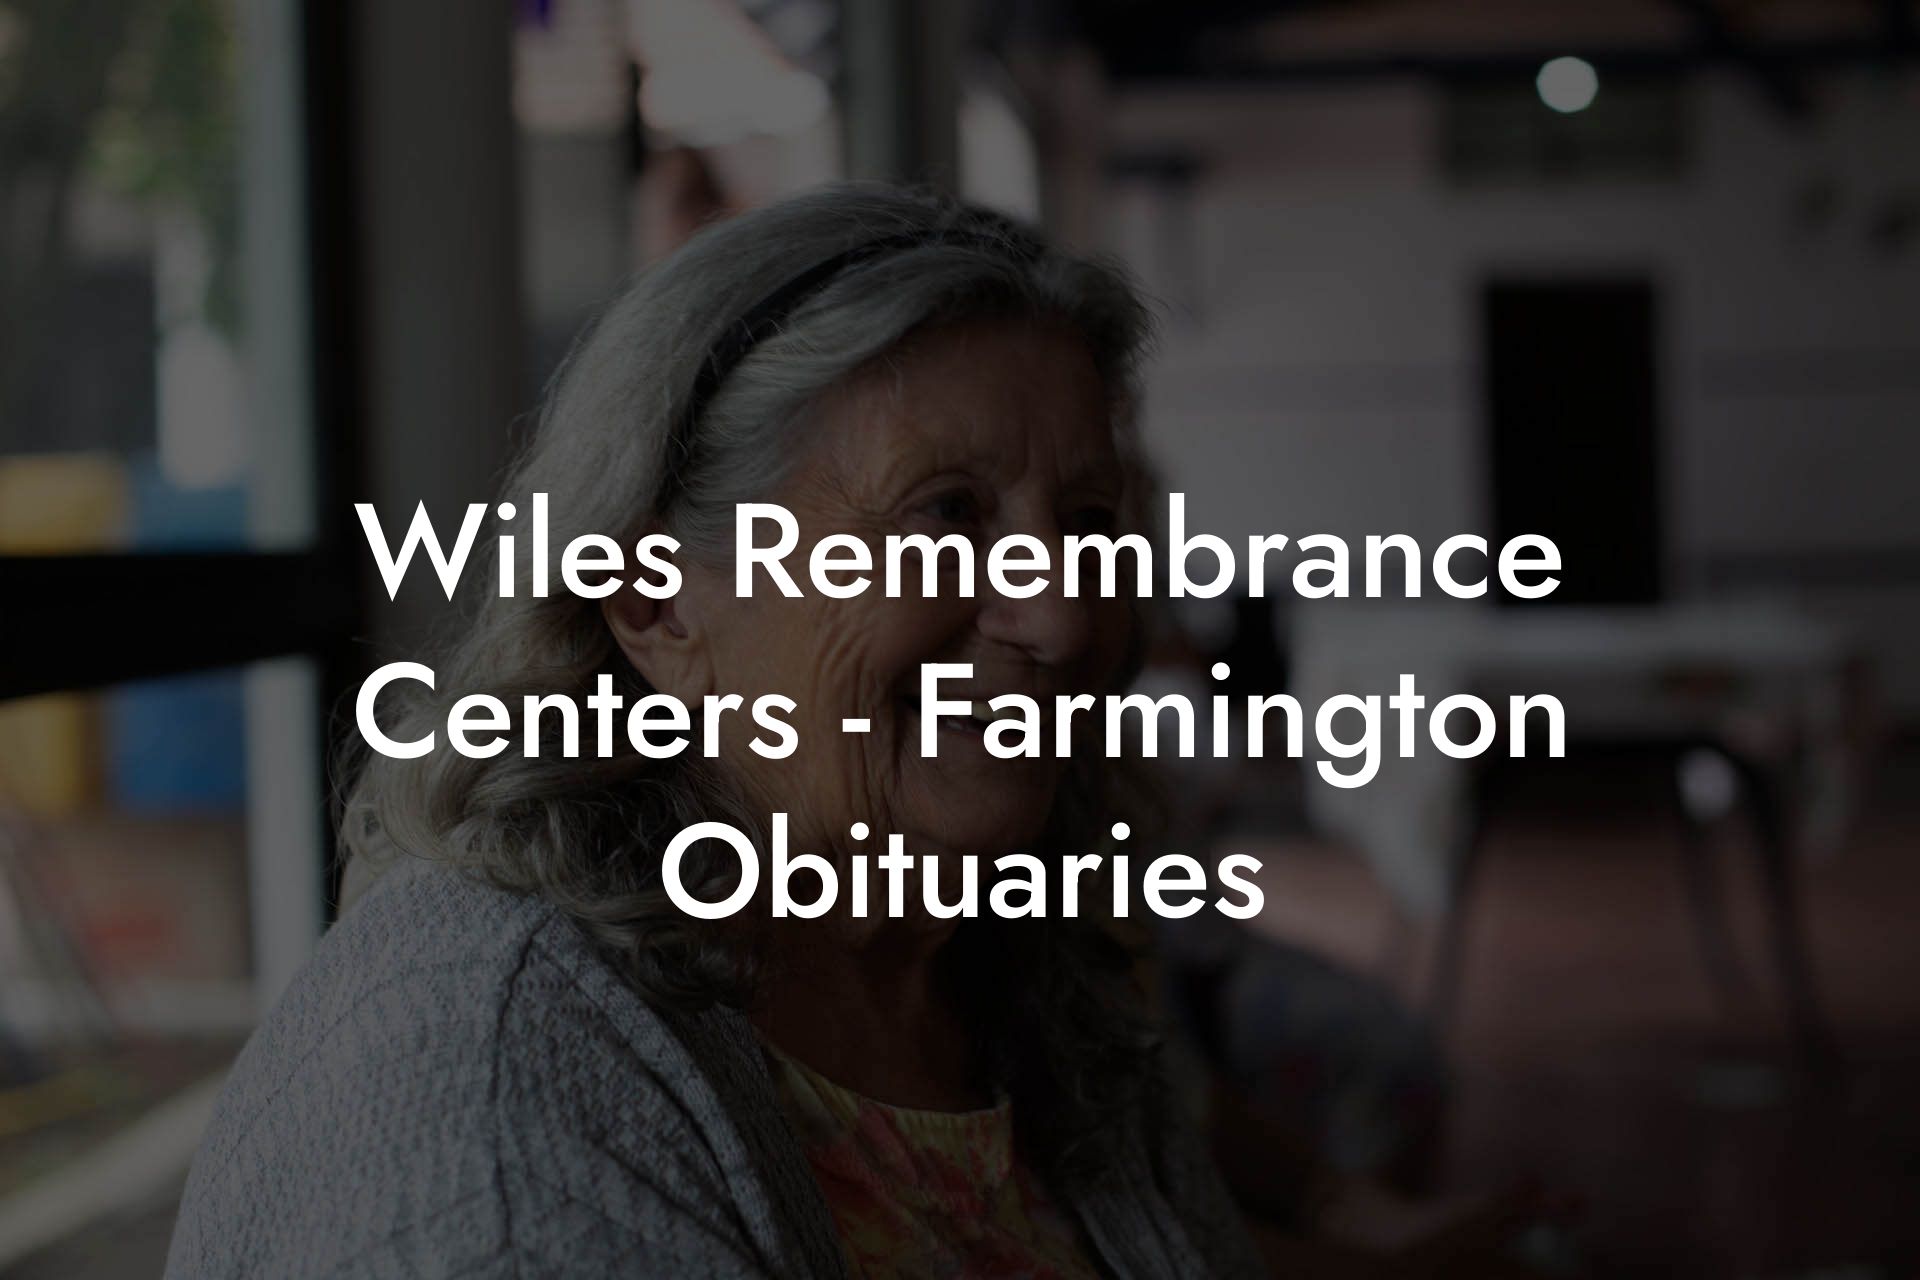 Wiles Remembrance Centers - Farmington Obituaries